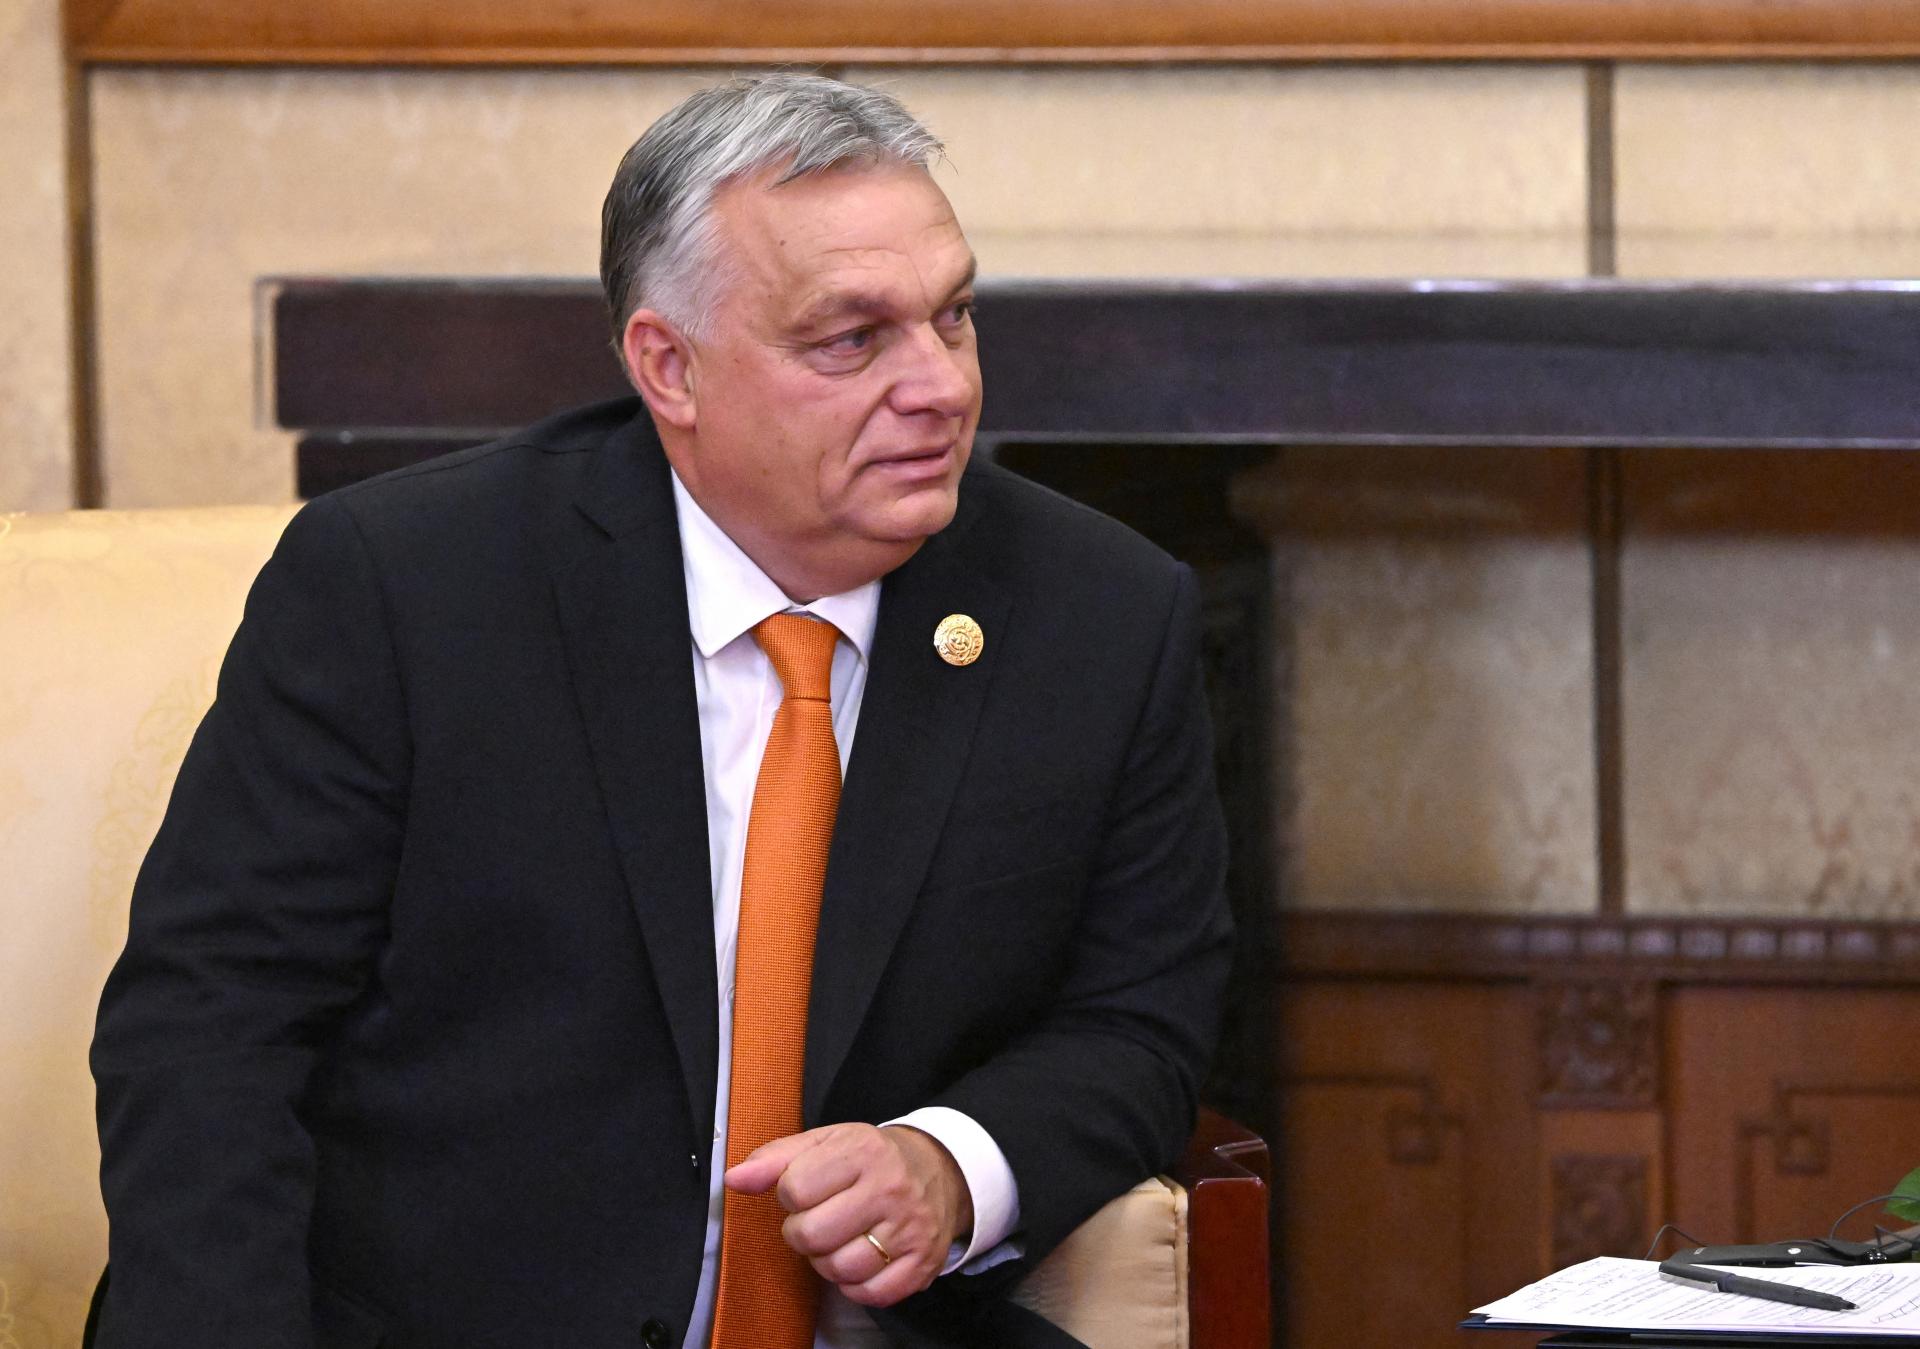 Słowacja nie przyjmie roli Polski jako sojusznika Orbána – twierdzi węgierski ekonomista